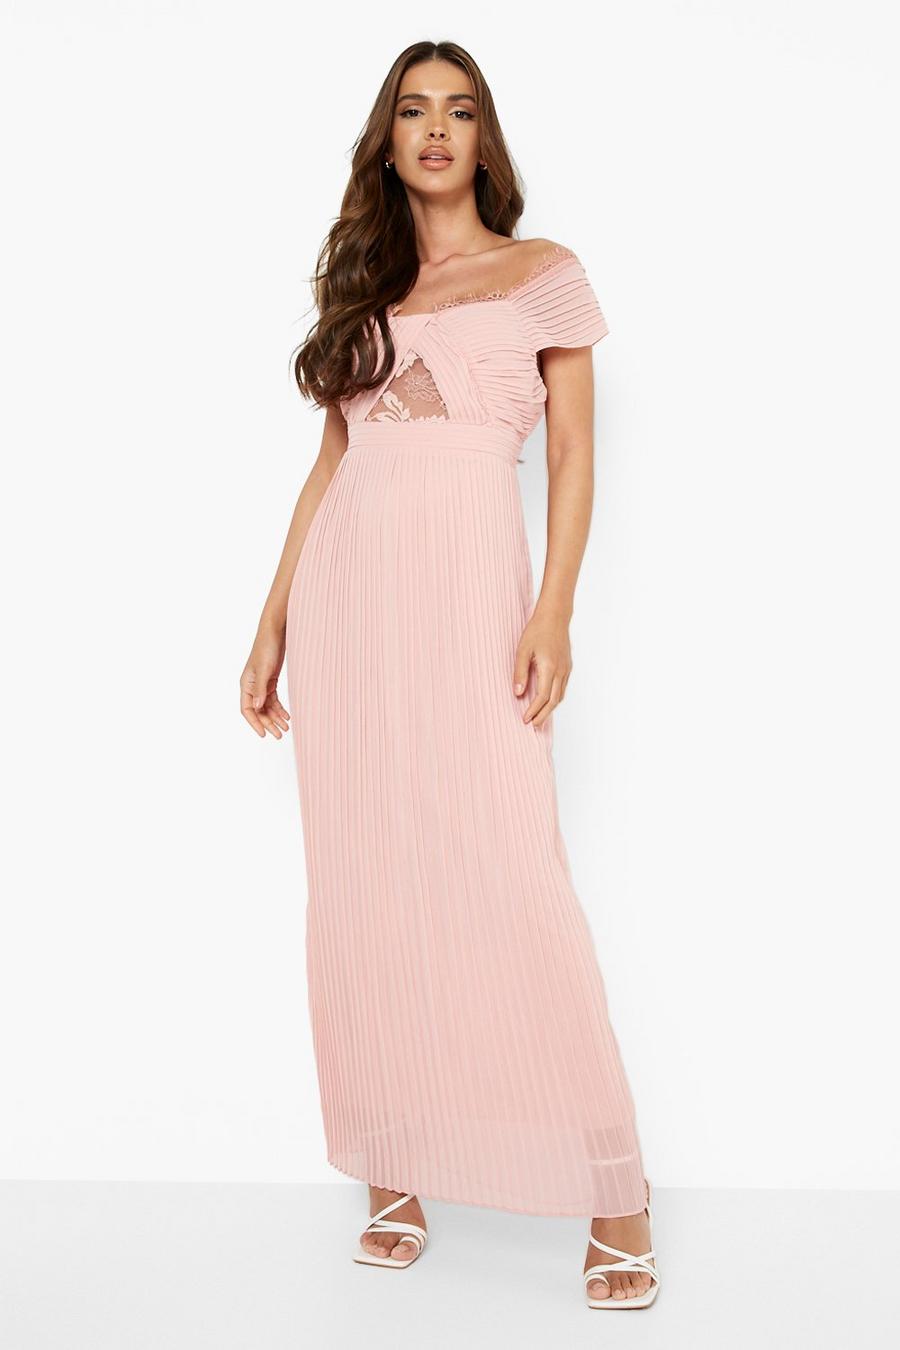 Blush pink Lace Detail Pleated Bardot Maxi Dress